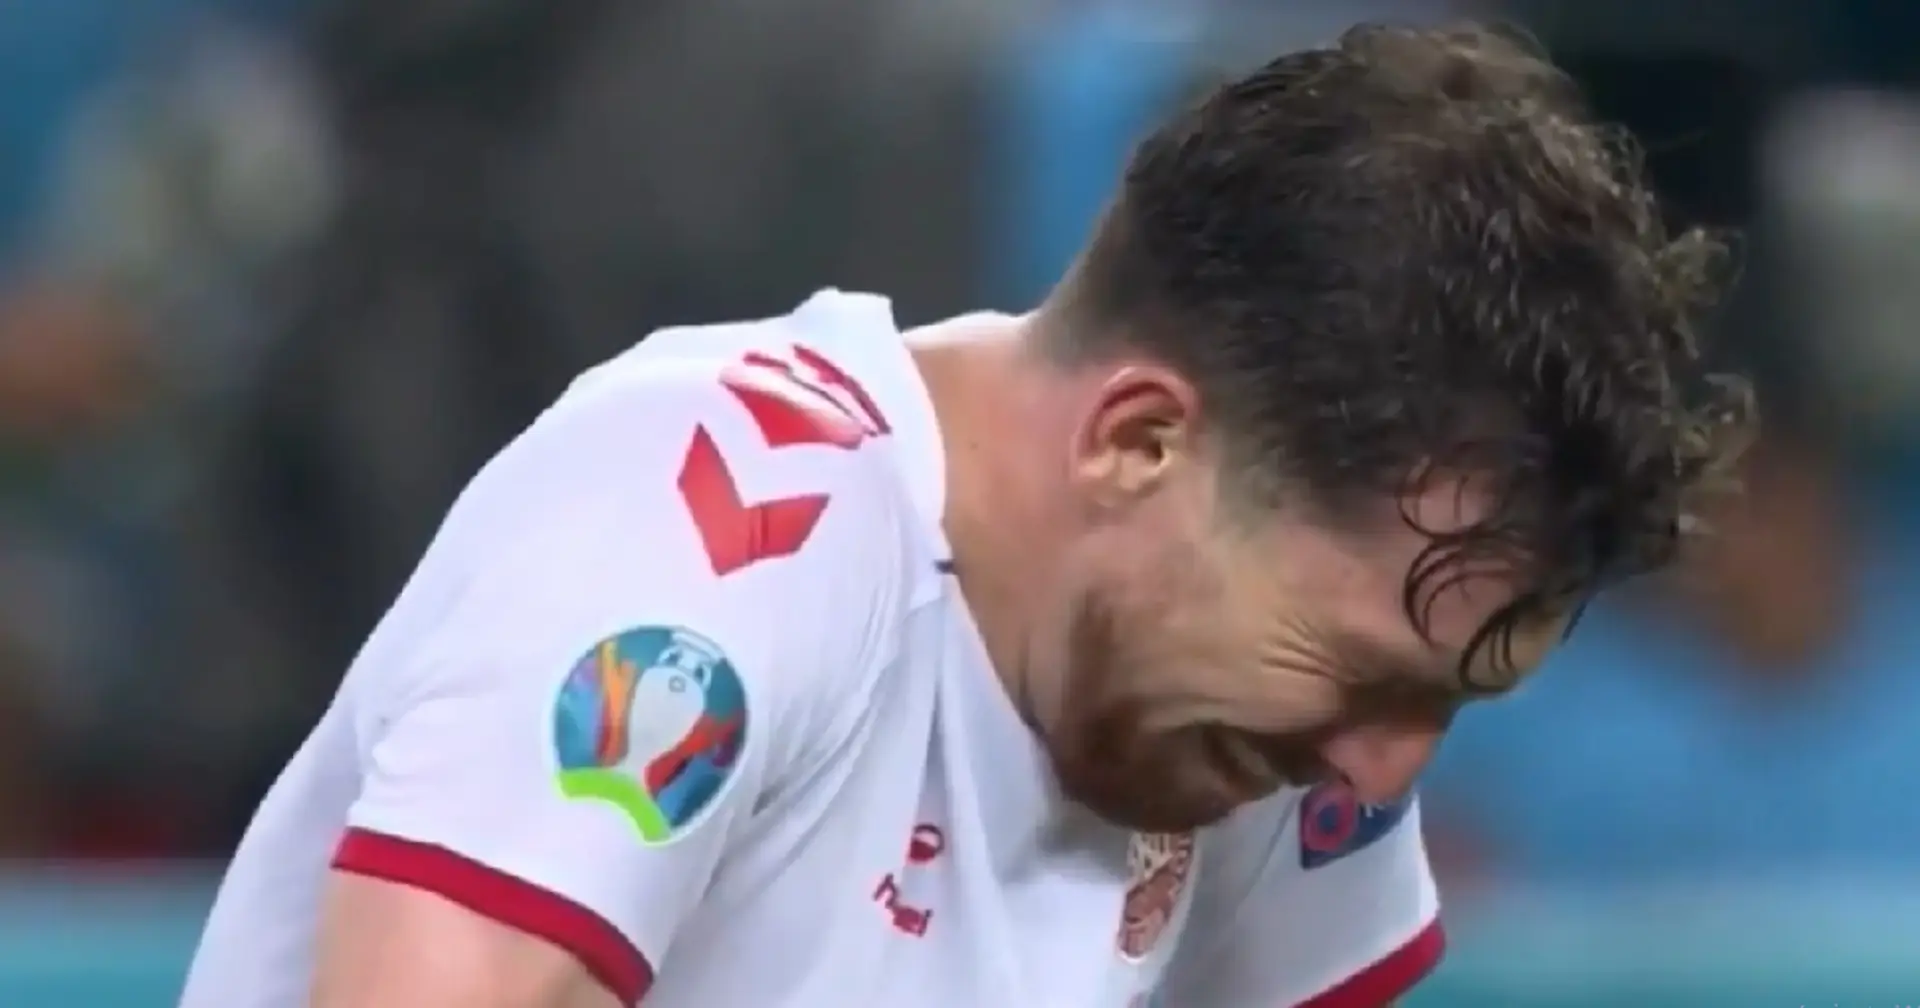 Pierre-Emile Hojbjerg breaks down in tears after Denmark-Czech Republic